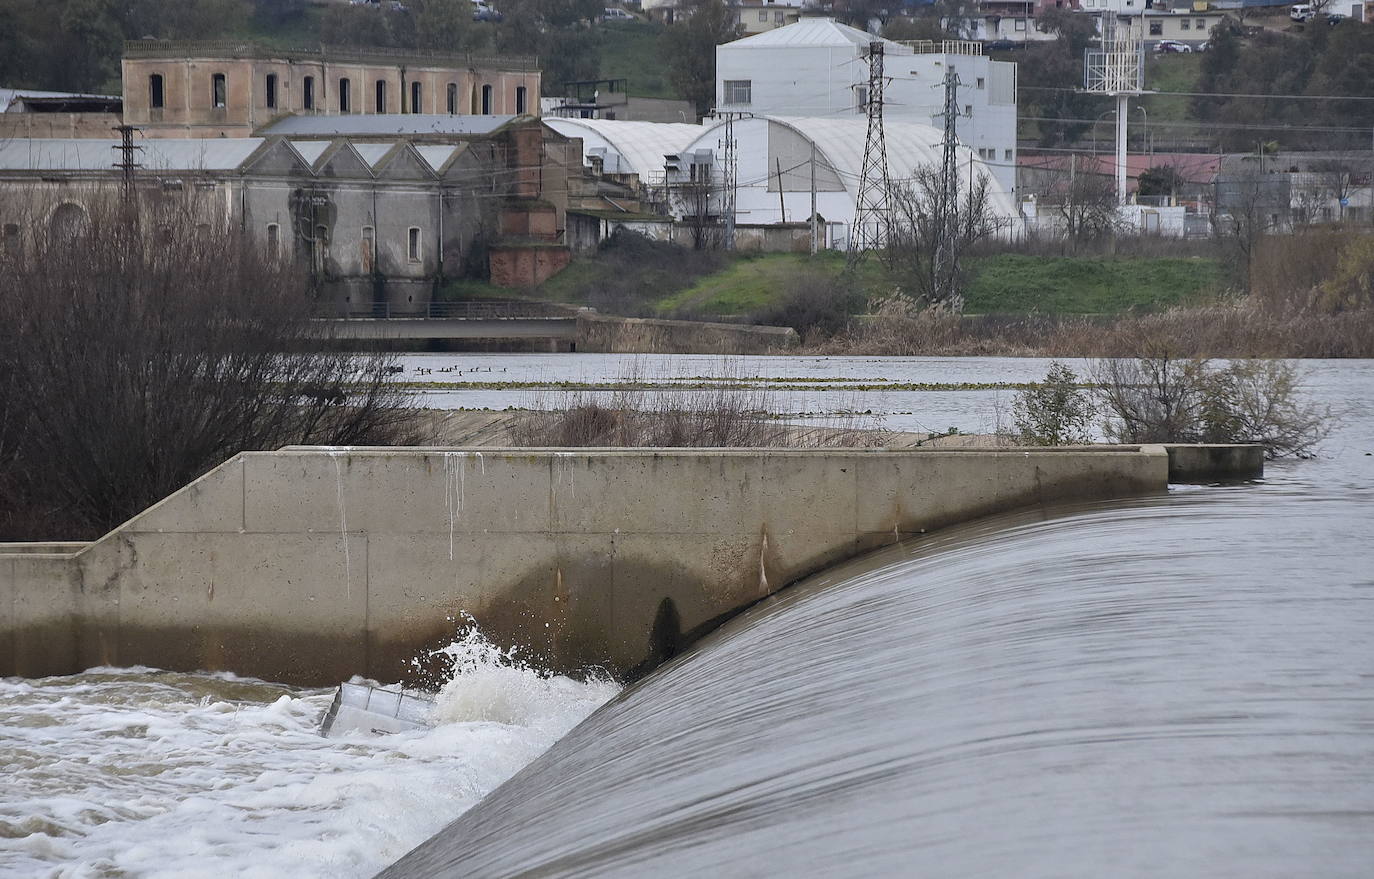 La CHG señalizará las zonas peligrosas del río entre las Vegas Altas y Badajoz